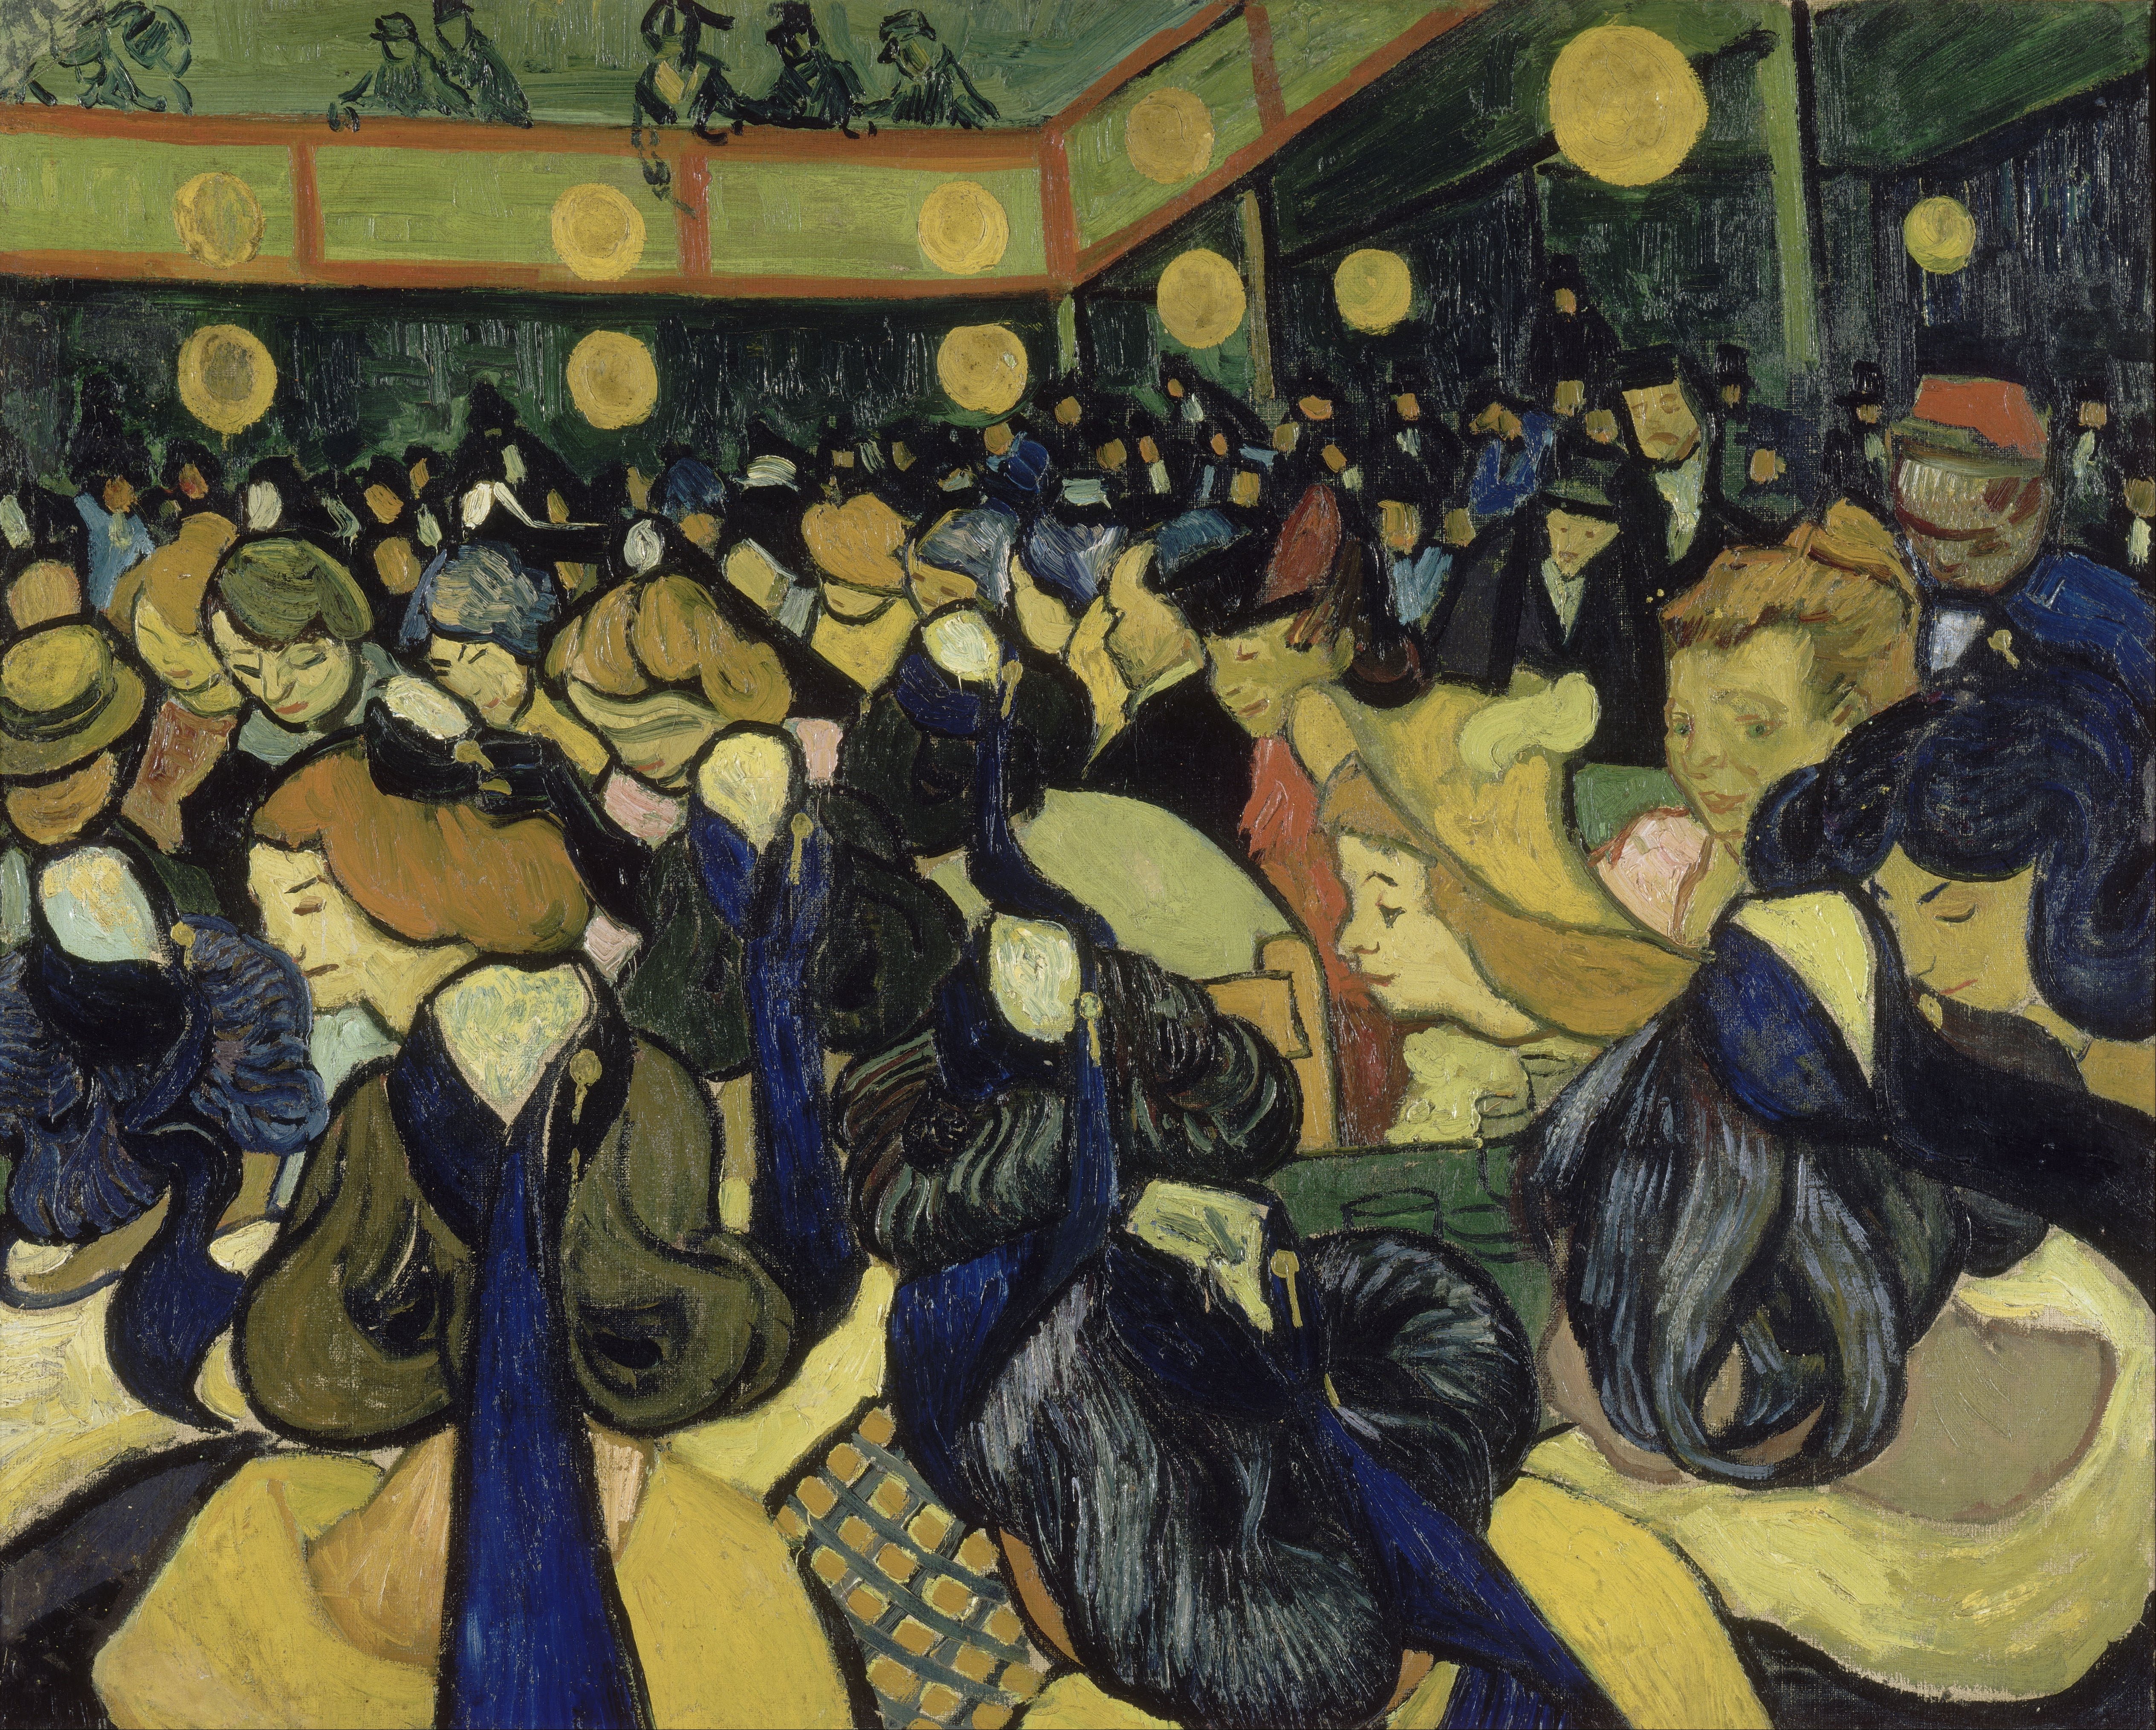 Sala de dans din Arles by Vincent van Gogh - 1888 - 65 x 81 cm 